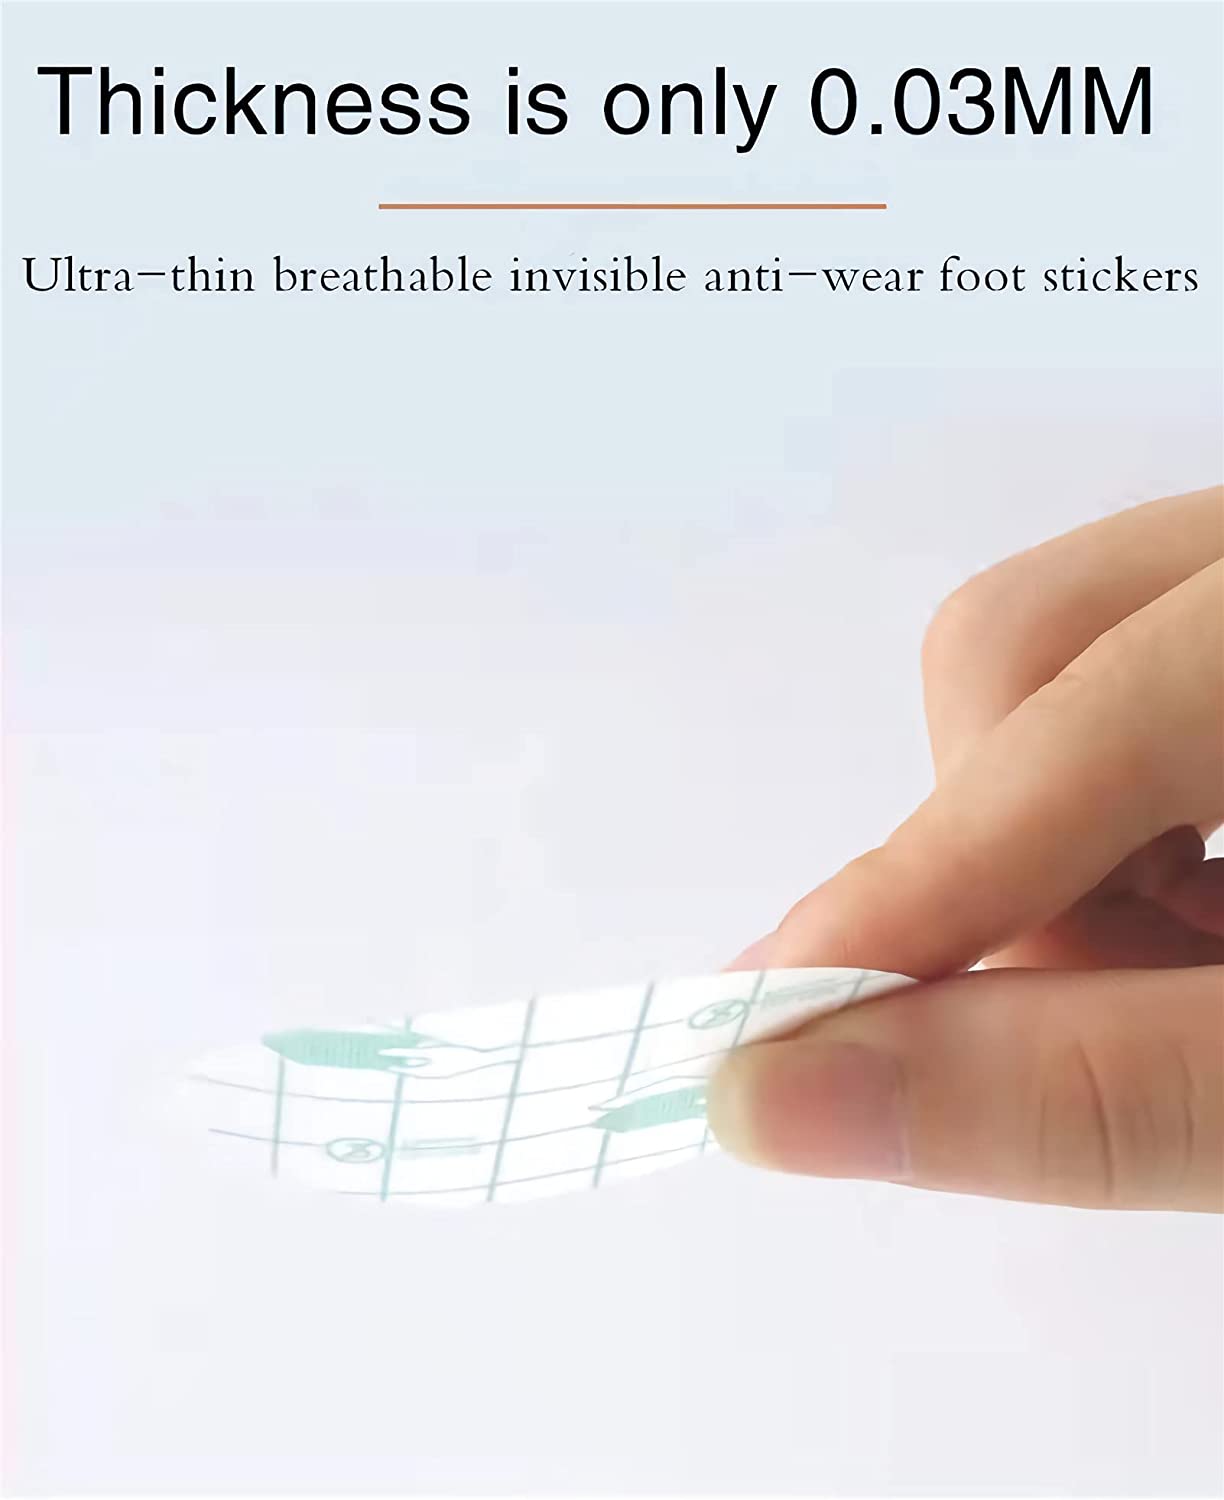 Blíster adhesivo impermeable, invisible, fino, para el cuidado de los pies